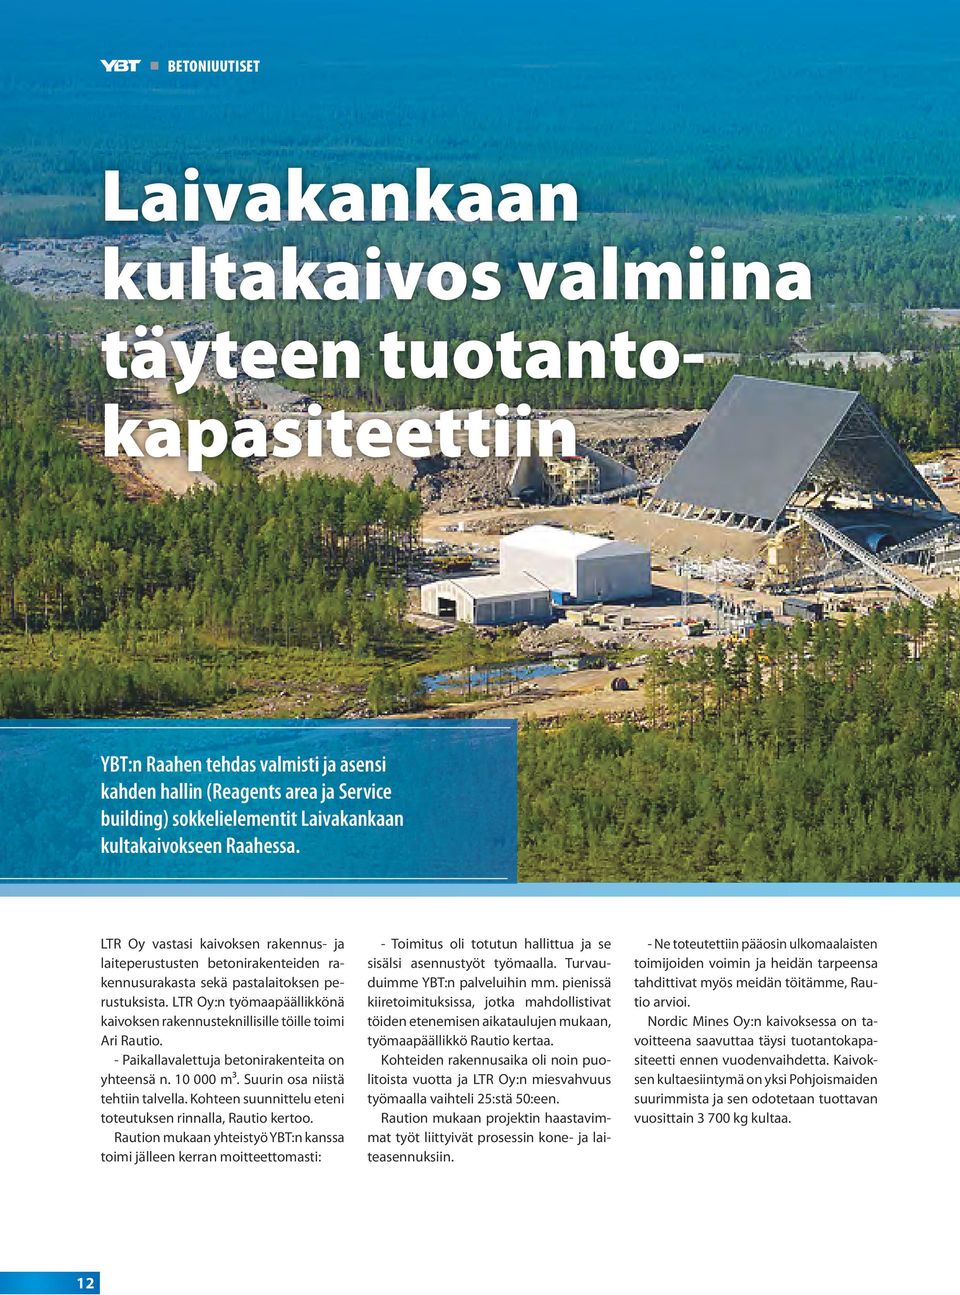 LTR Oy:n työmaapäällikkönä kaivoksen rakennusteknillisille töille toimi Ari Rautio. - Paikallavalettuja betonirakenteita on yhteensä n. 10 000 m³. Suurin osa niistä tehtiin talvella.